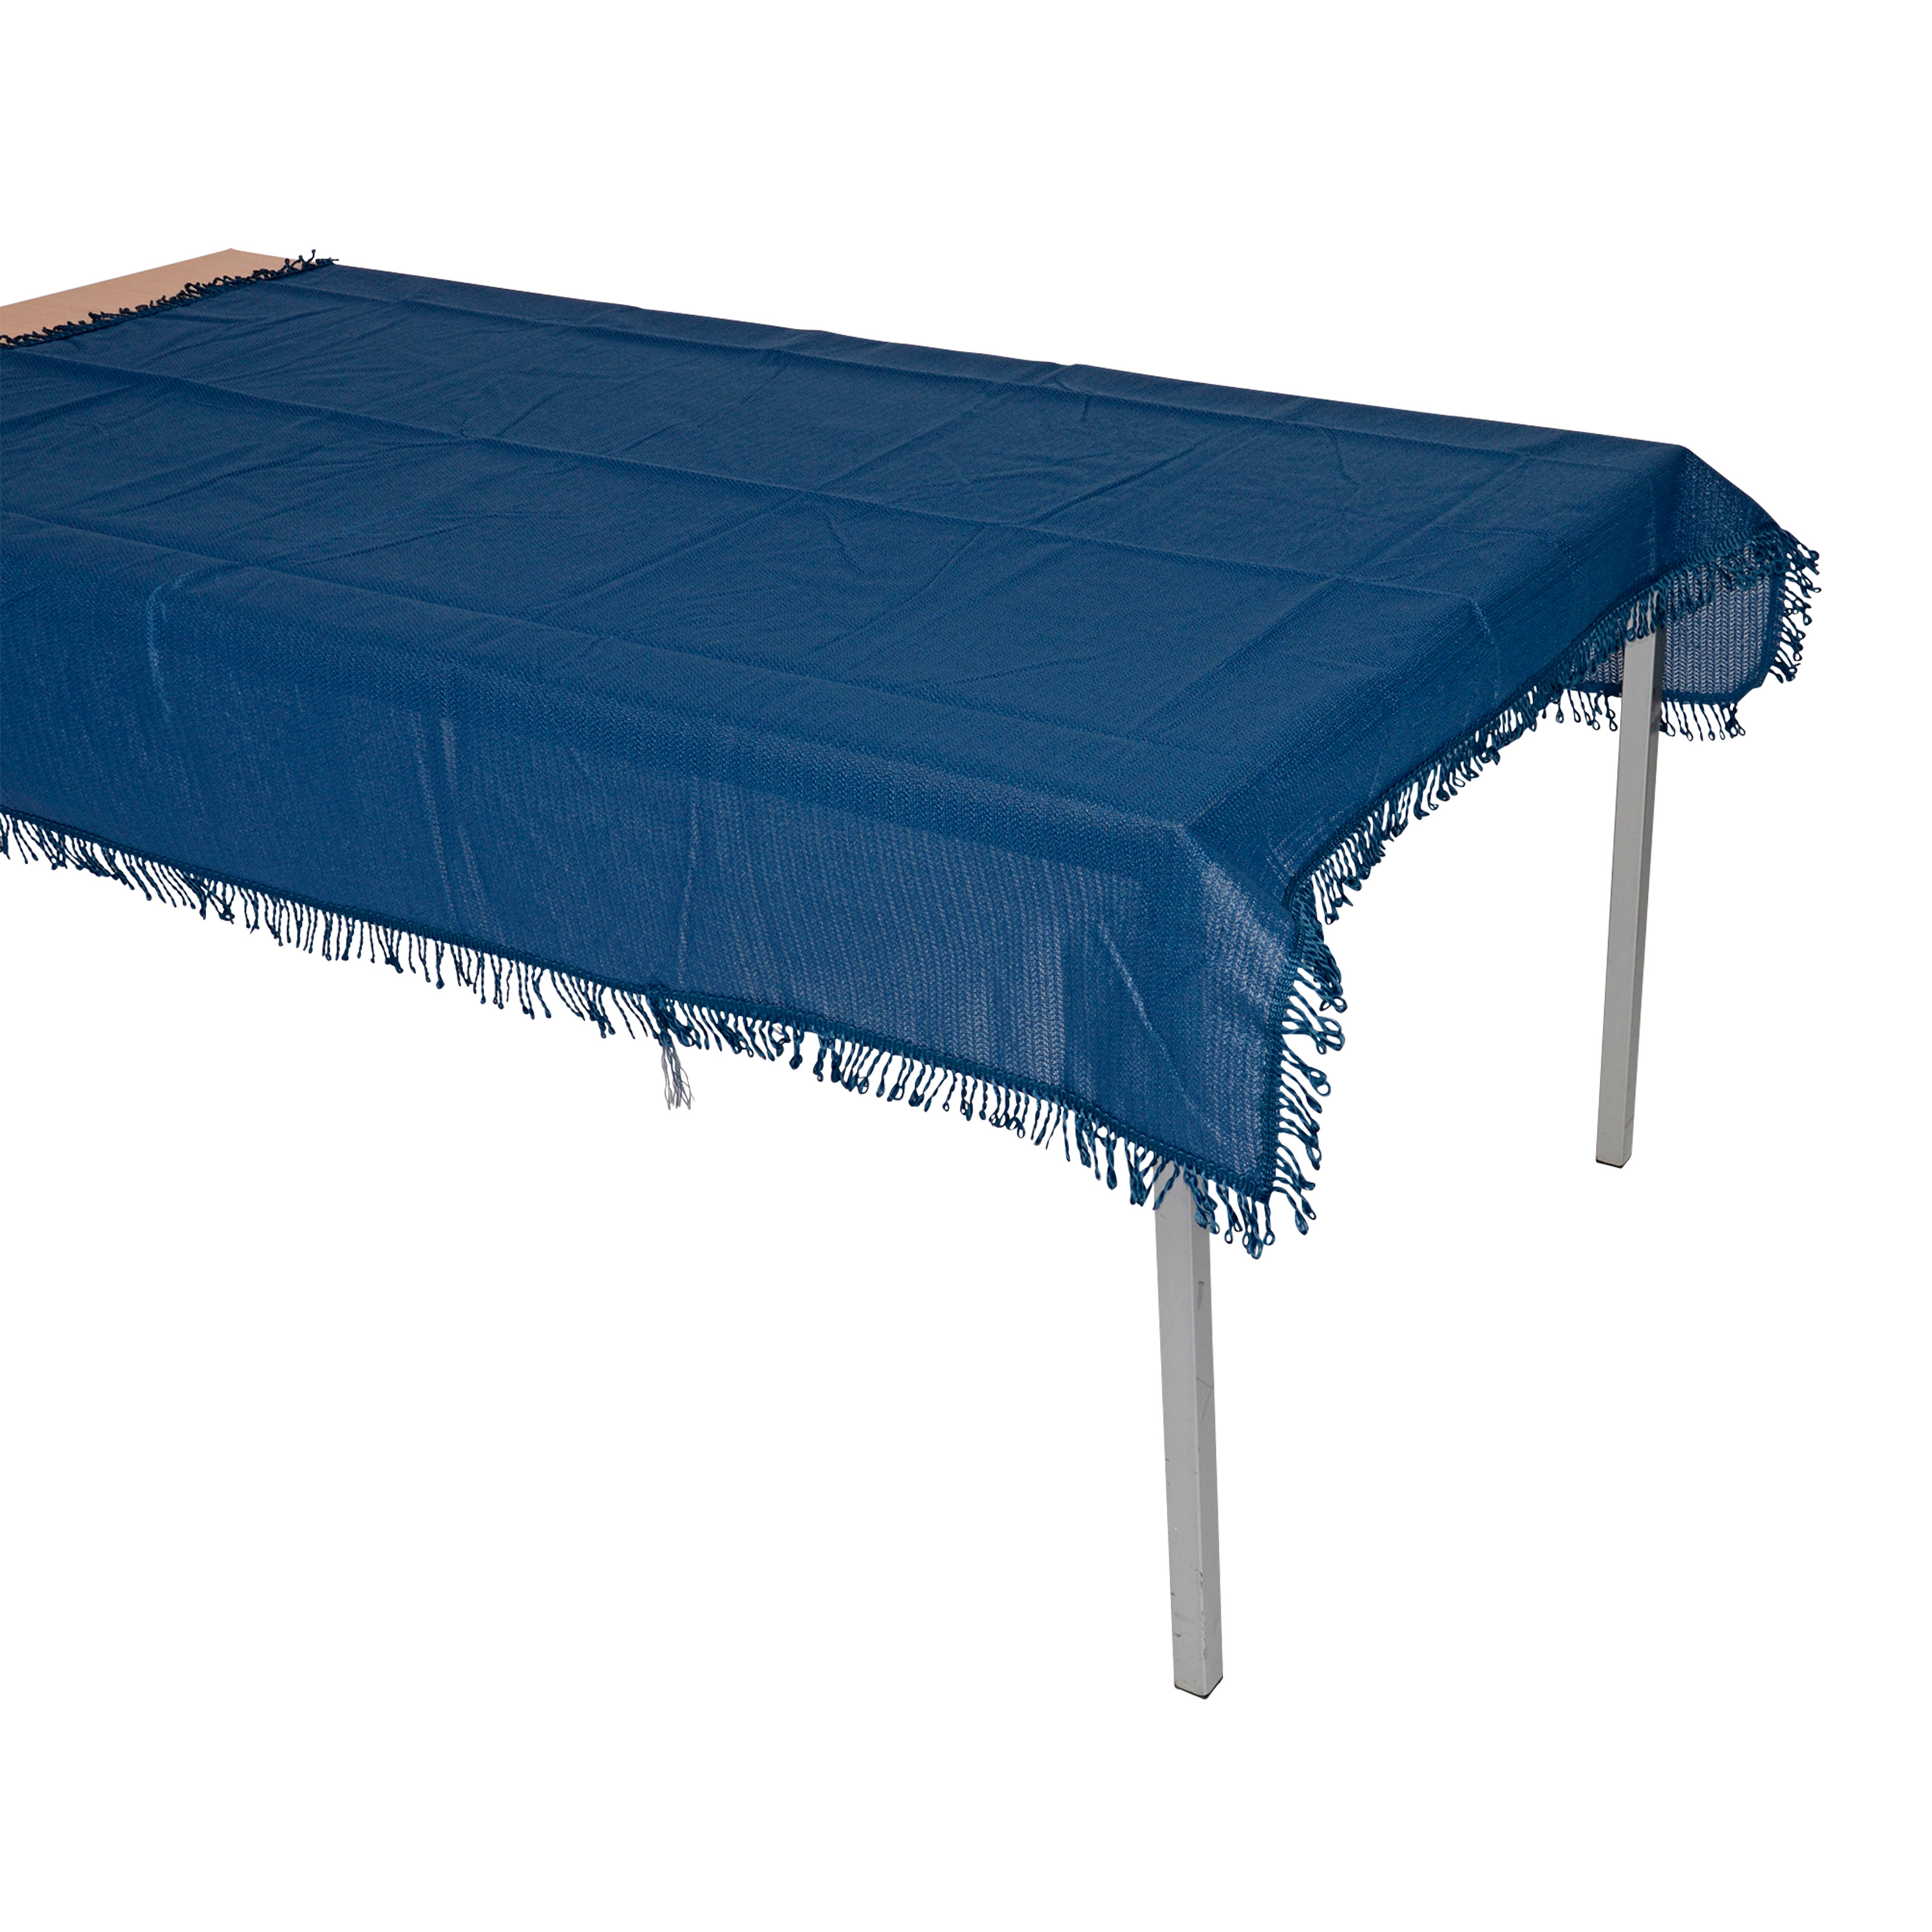 Tischdecke aus Kunststoff 140x180cm rechteckig, blau, wetterfest